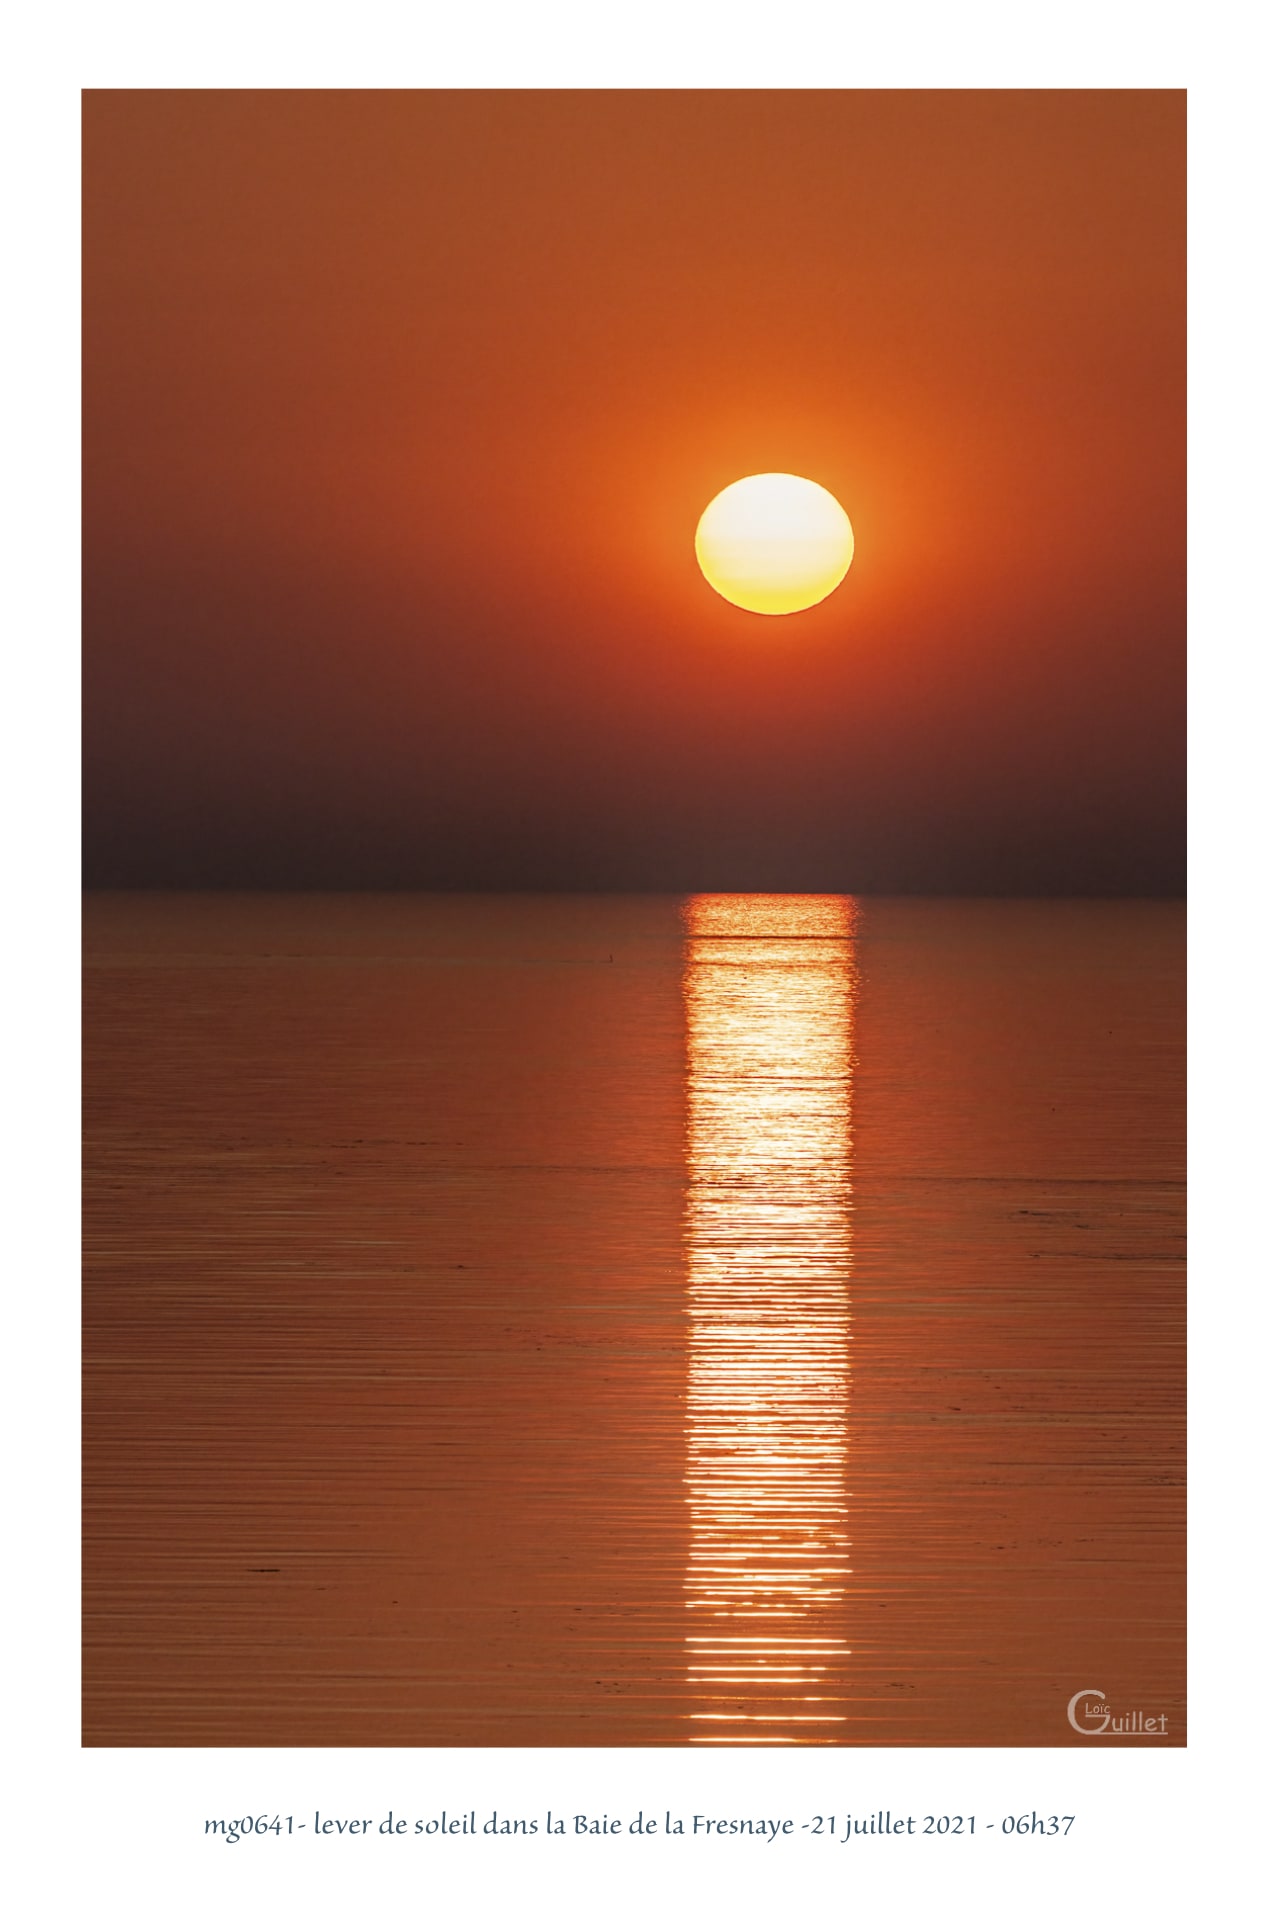 Portfolio - lever de soleil